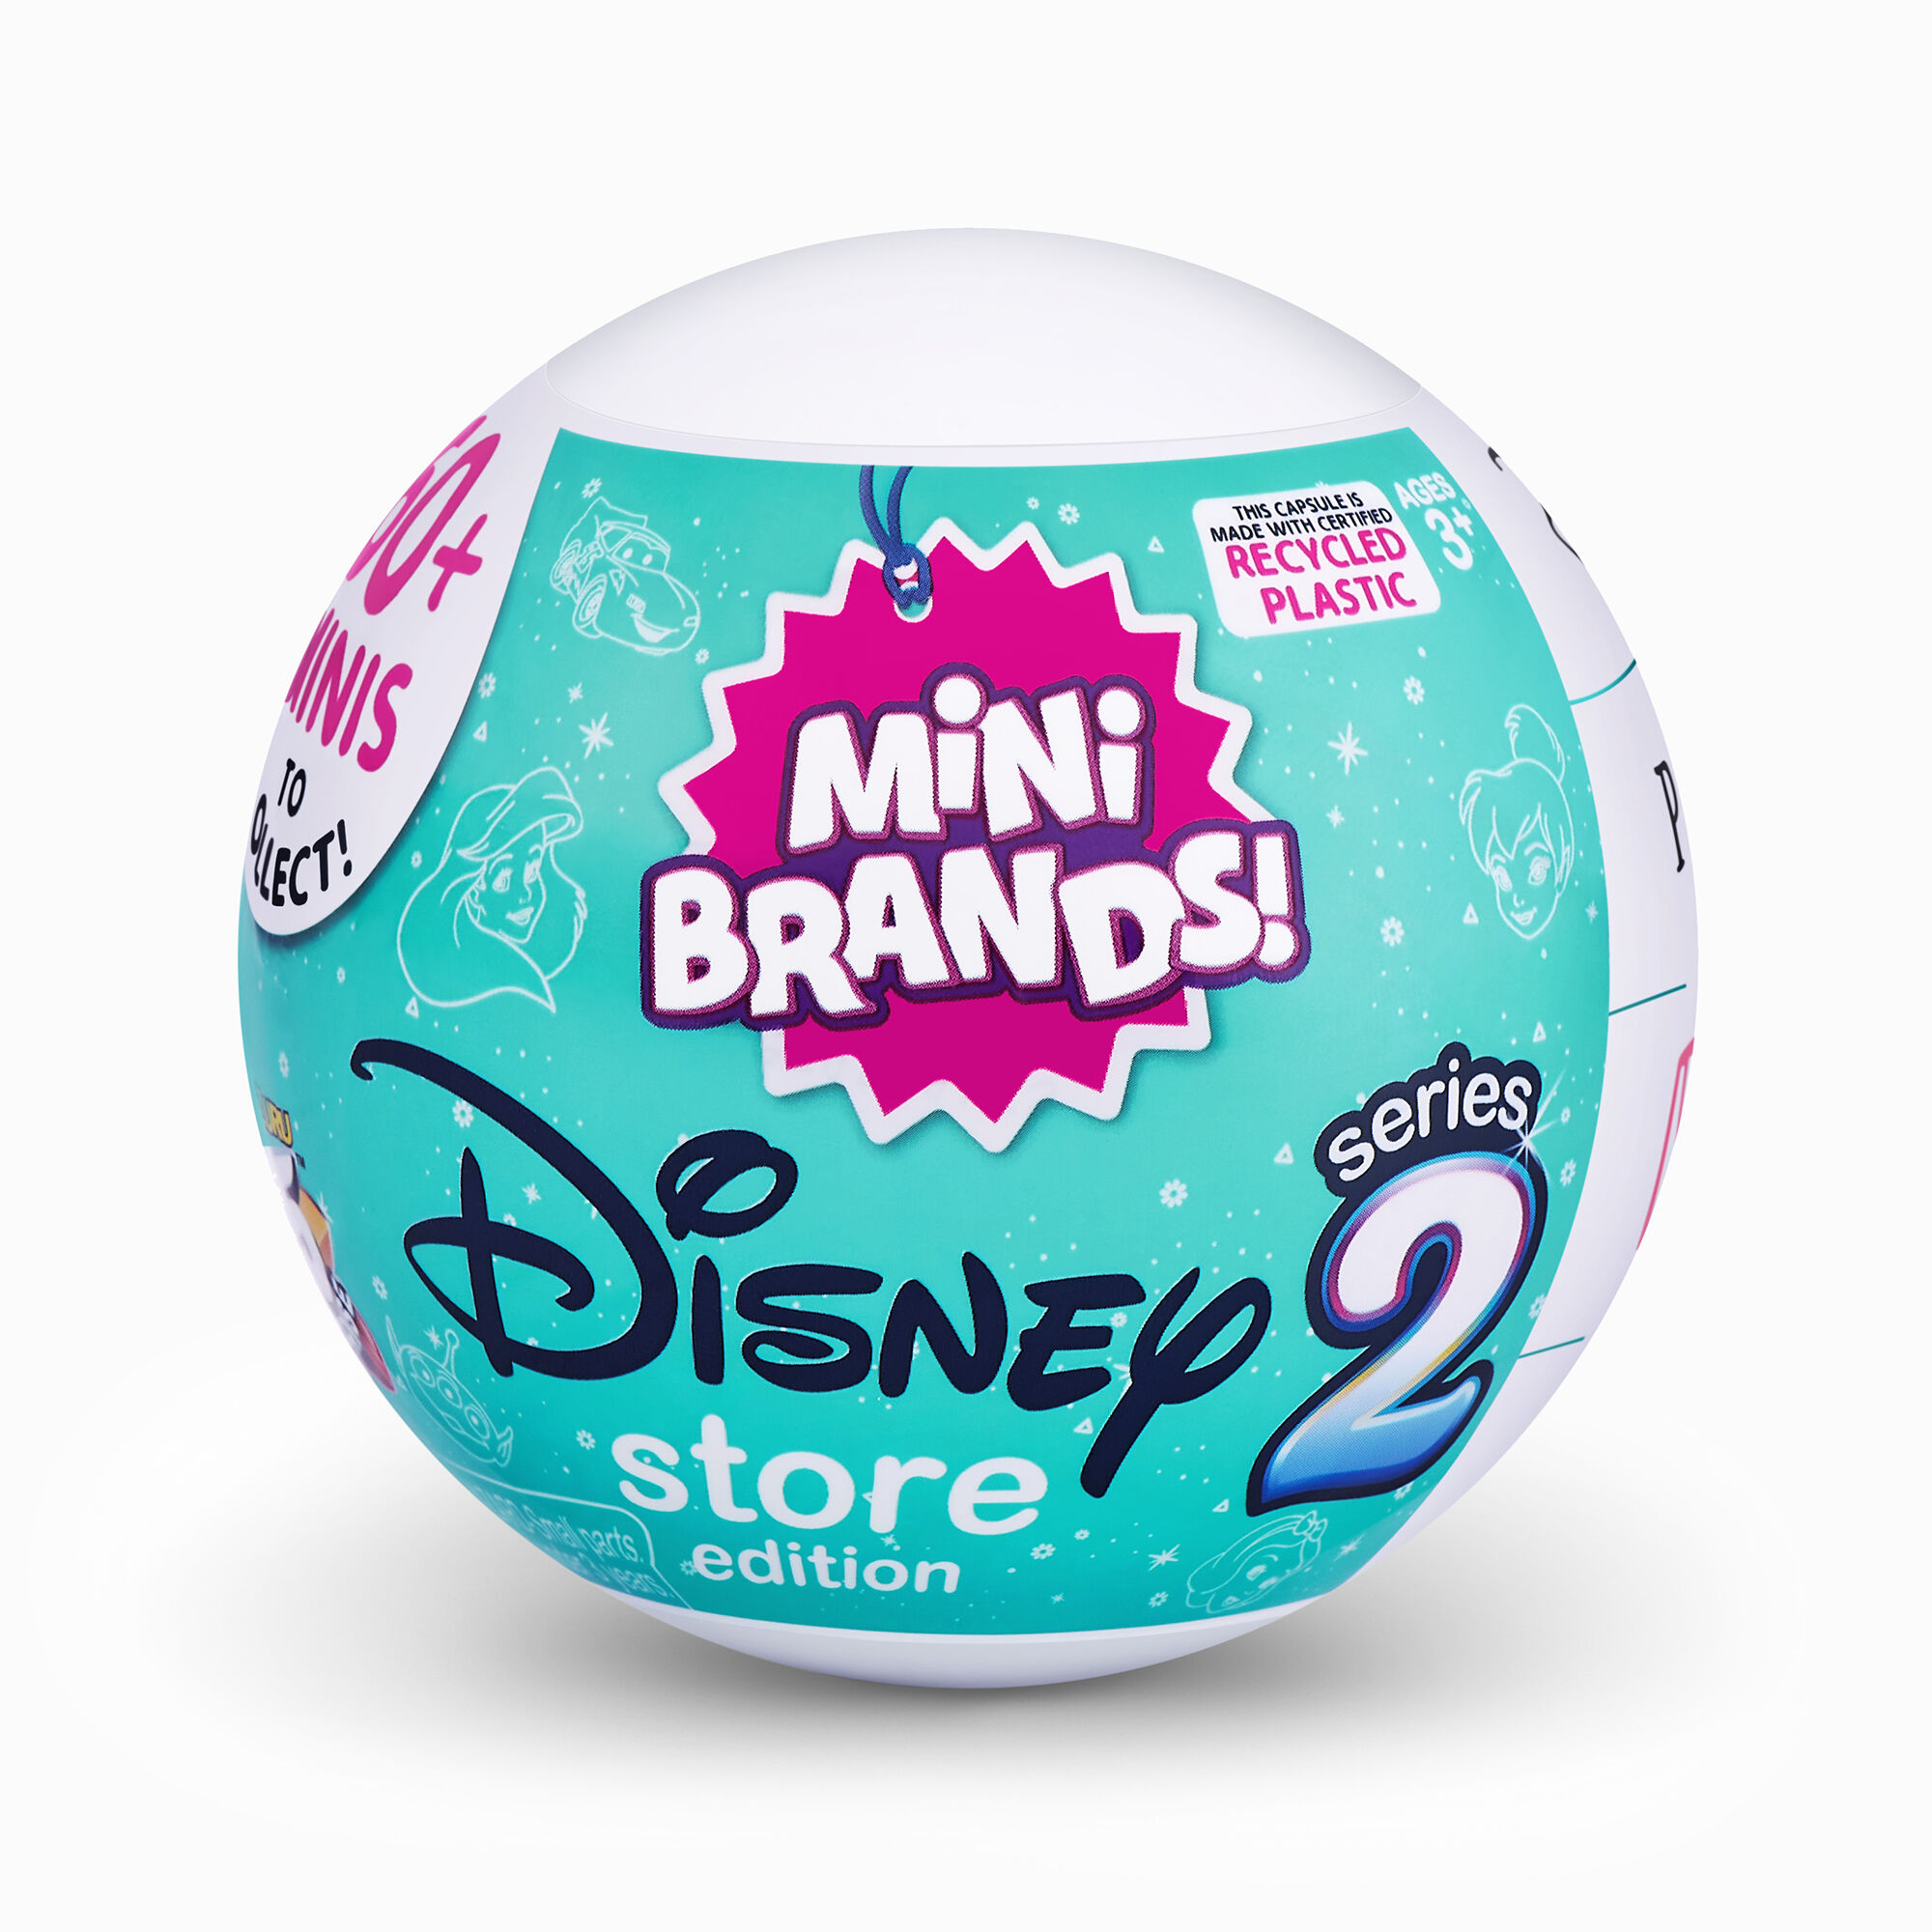 View Claires 5 Surprises Mini Brands Series 2 Disney Blind Bag information